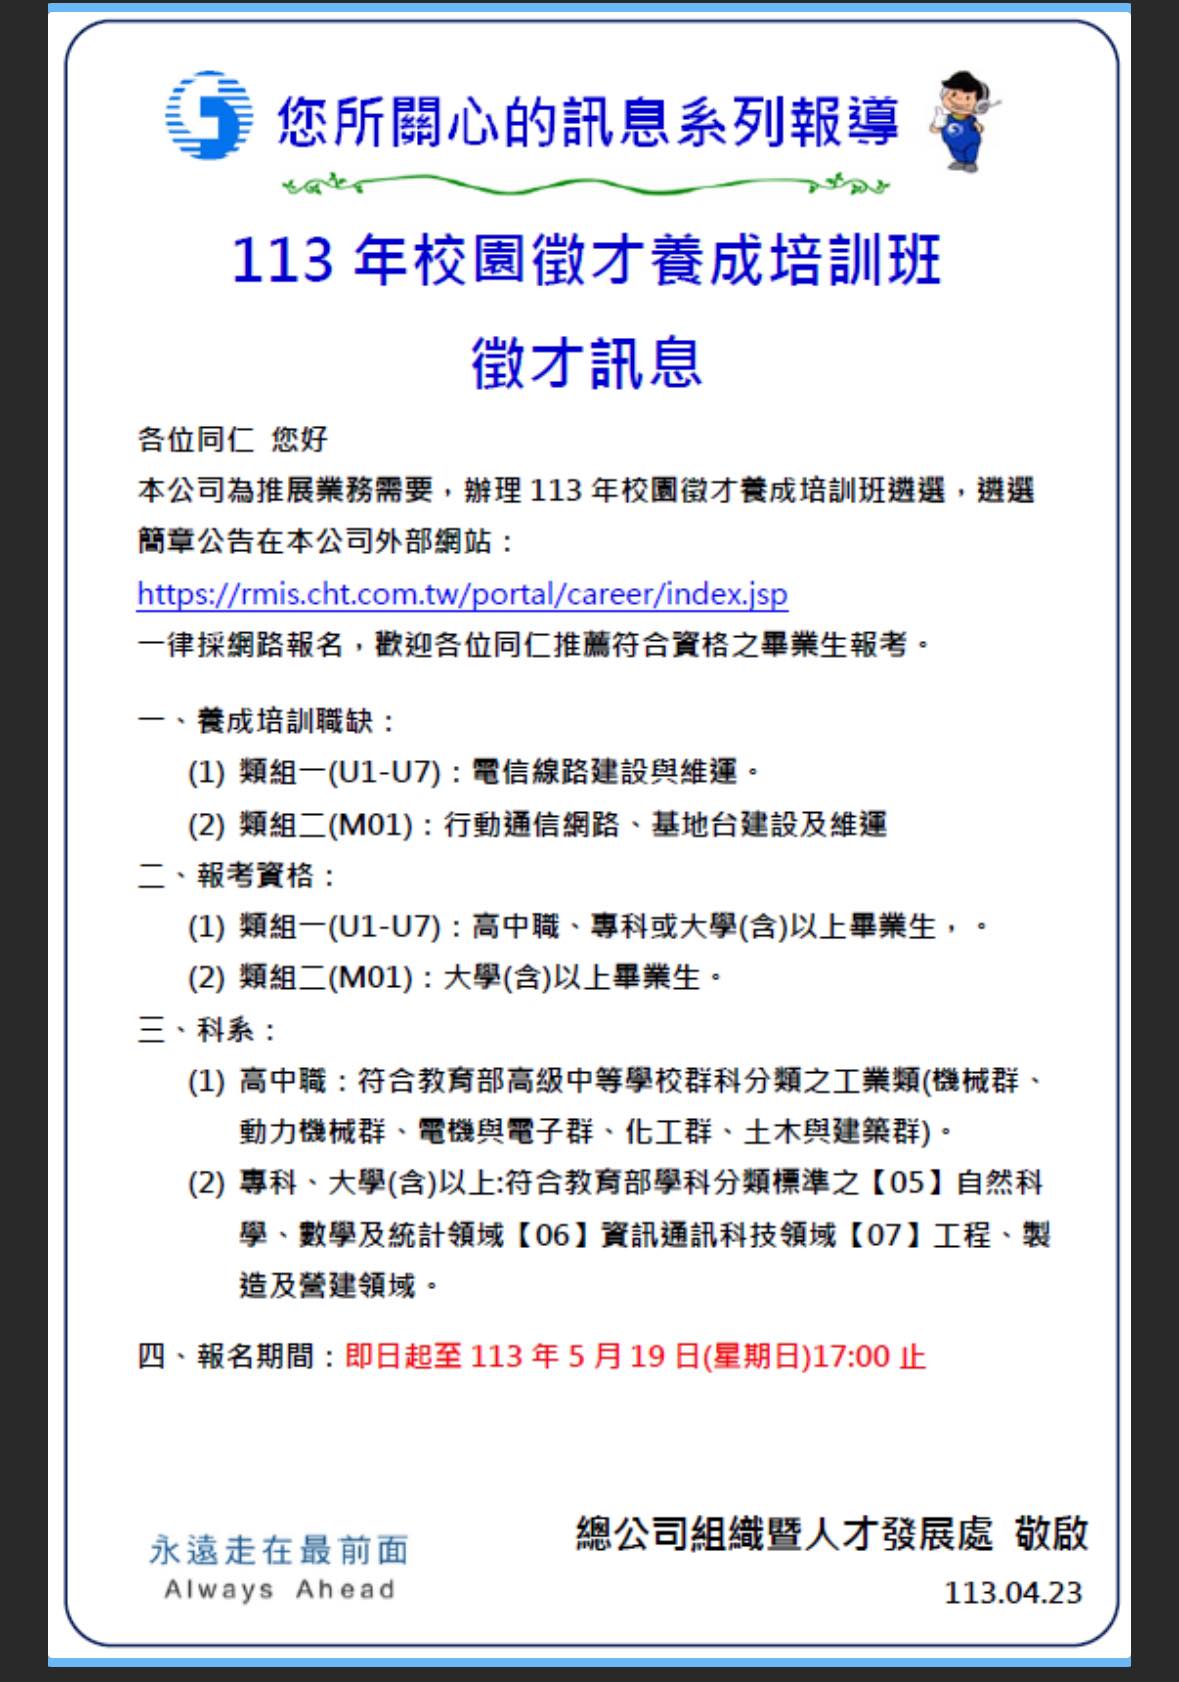 中華電信股份有限公司113年校園徵才養成培訓班遴選